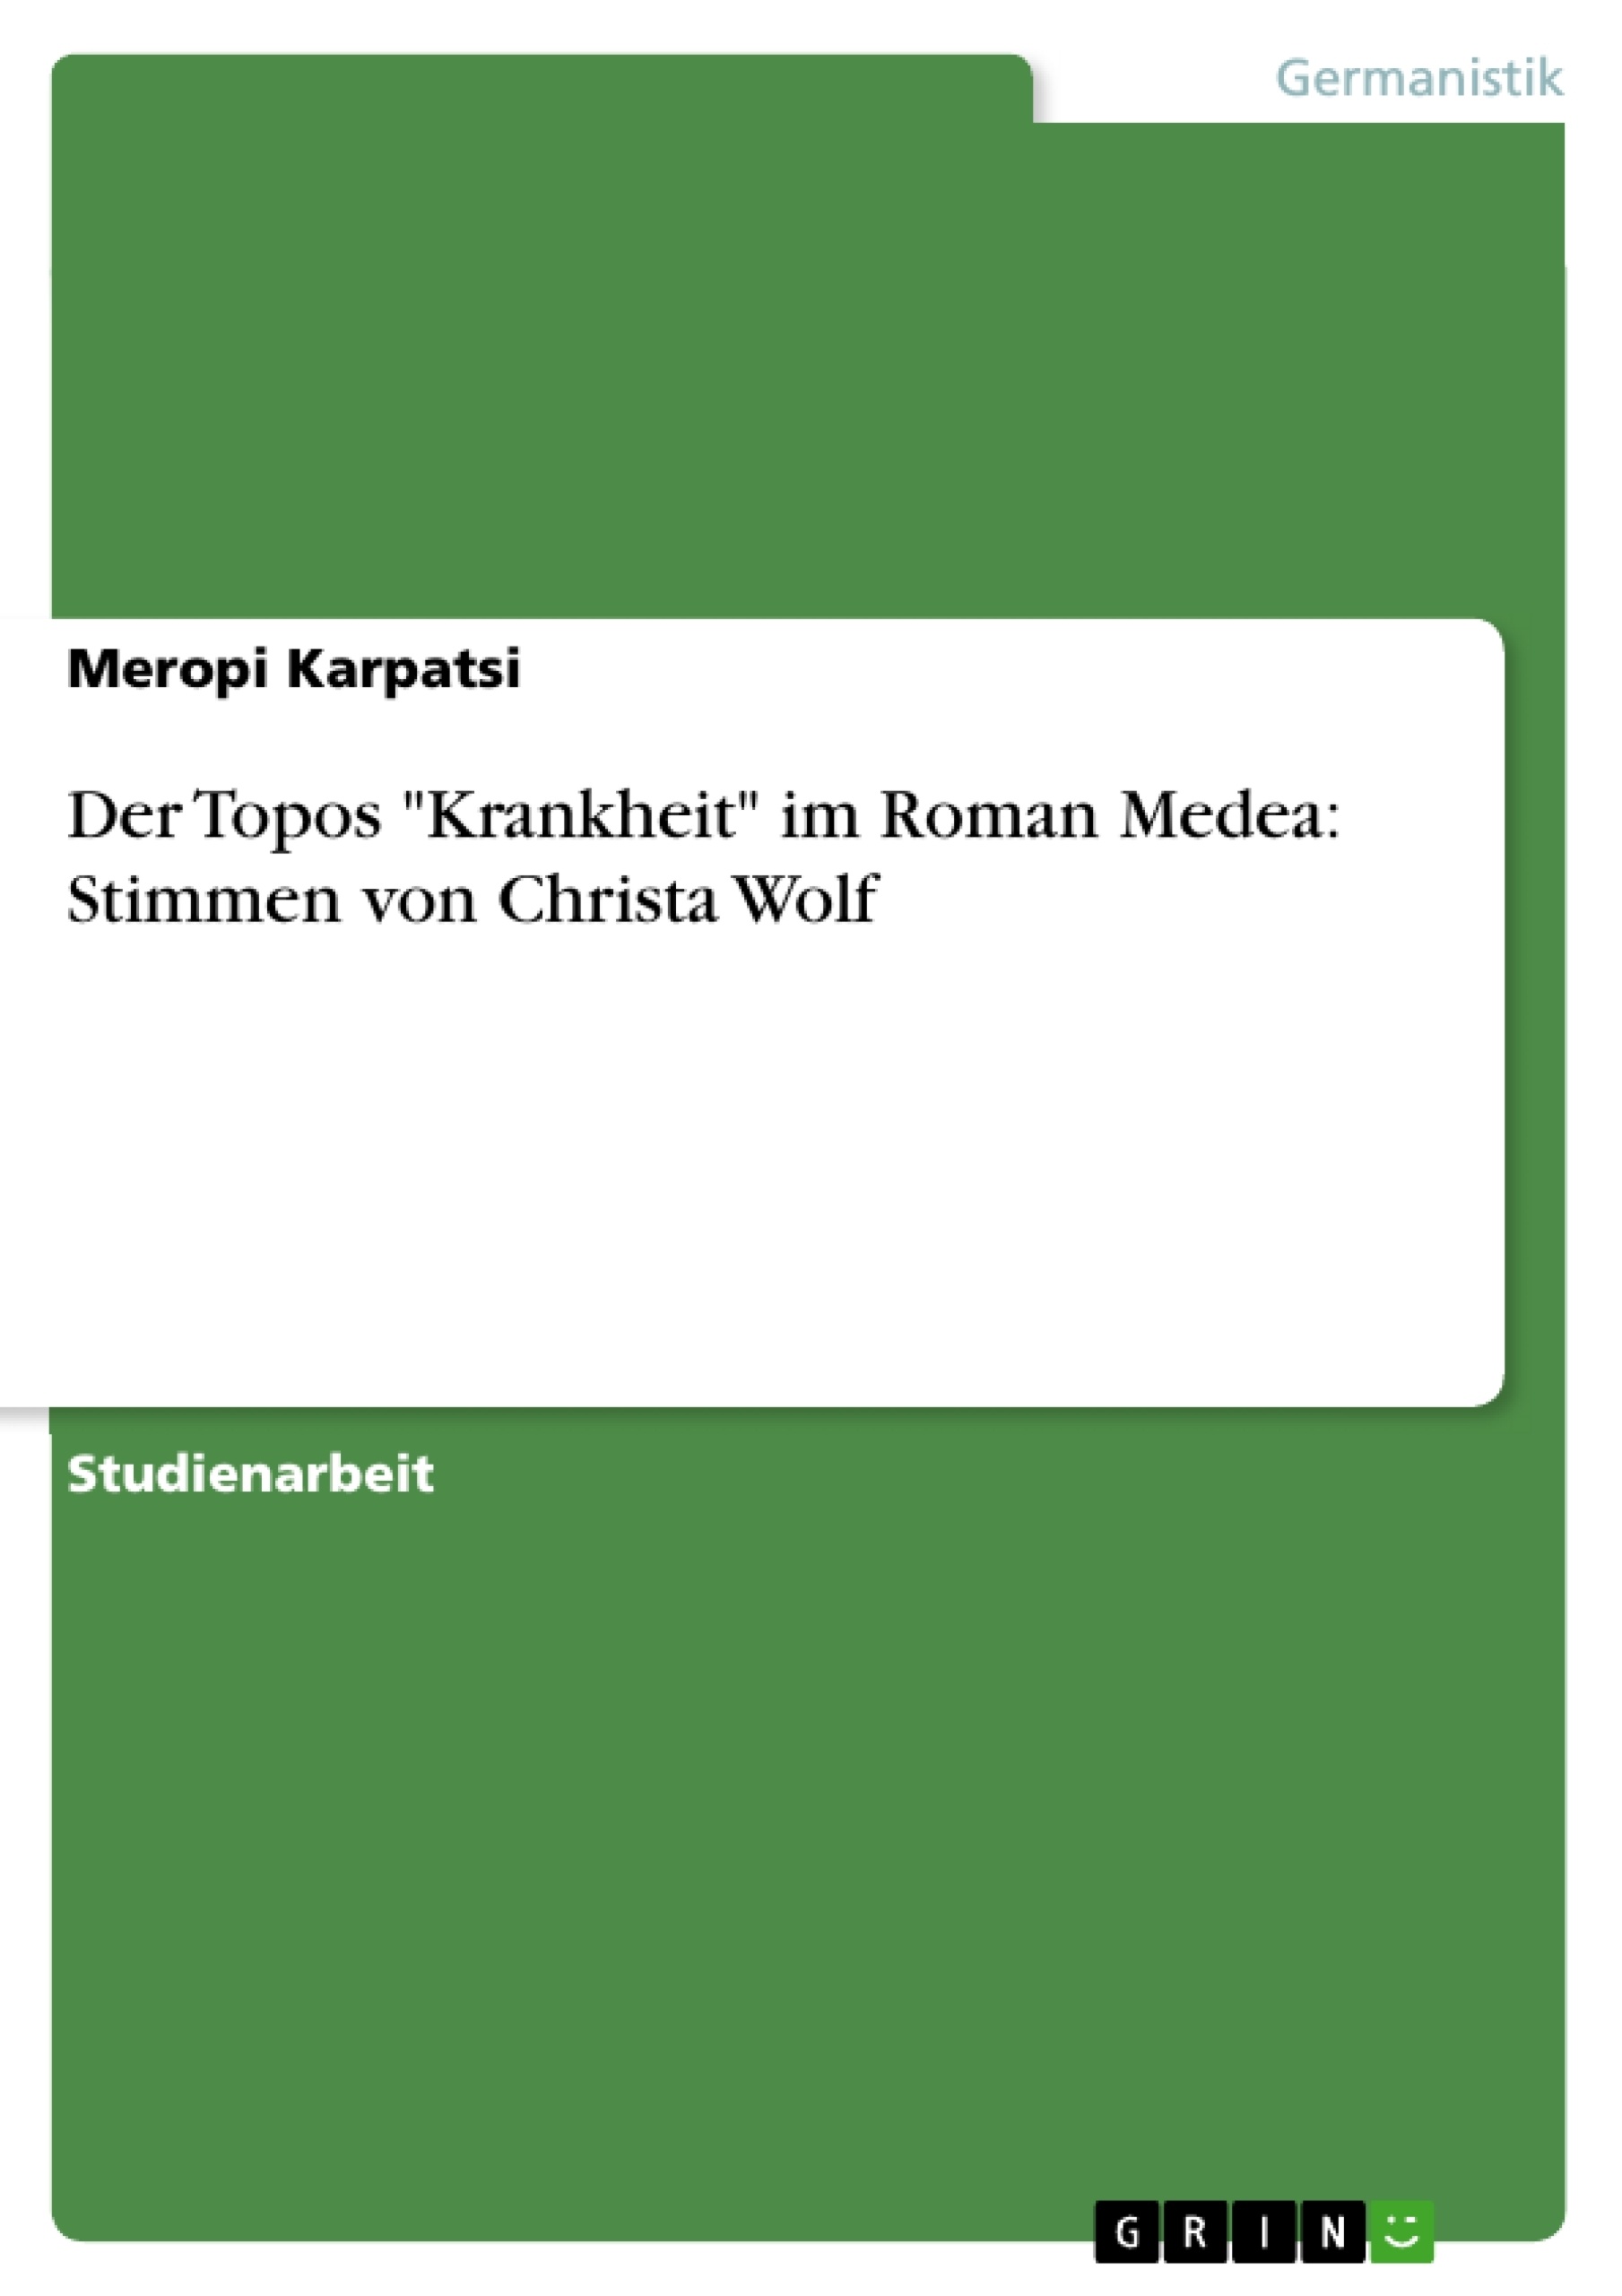 Title: Der Topos "Krankheit" im Roman Medea: Stimmen von Christa Wolf